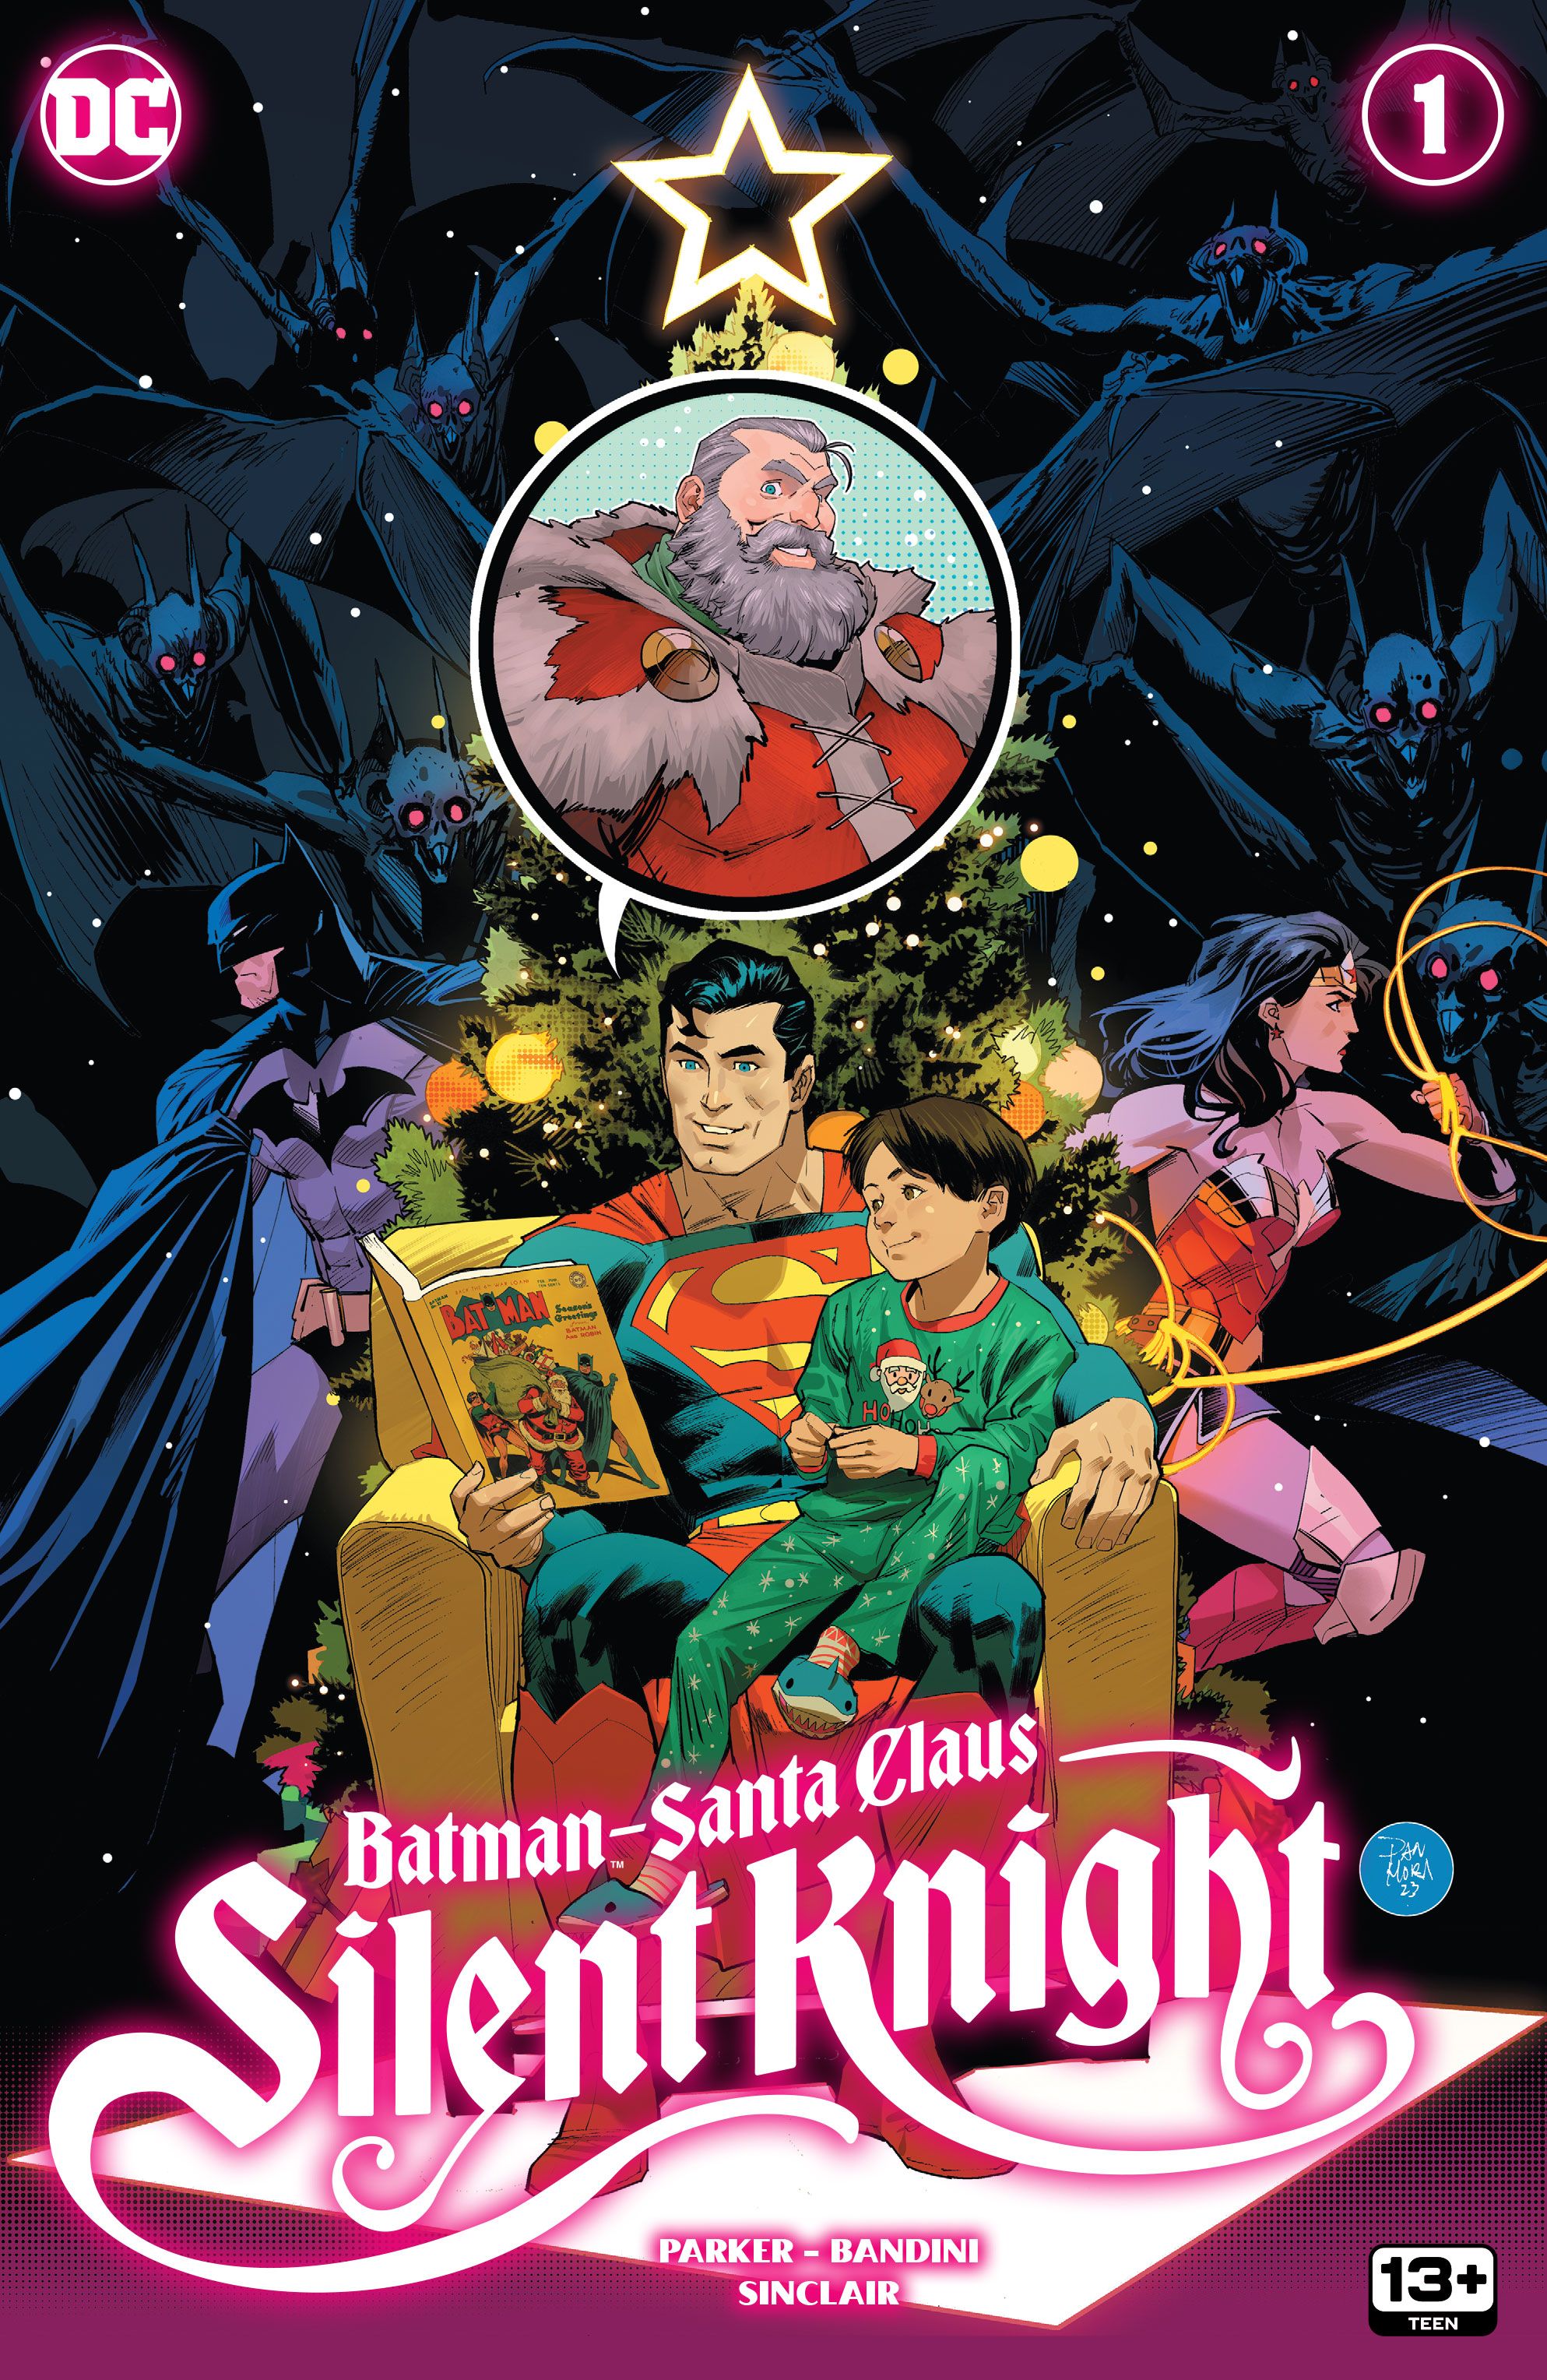 Superman lendo para criança com Batman e Mulher Maravilha ao fundo na capa de Batman / Papai Noel Silent Knight #1.